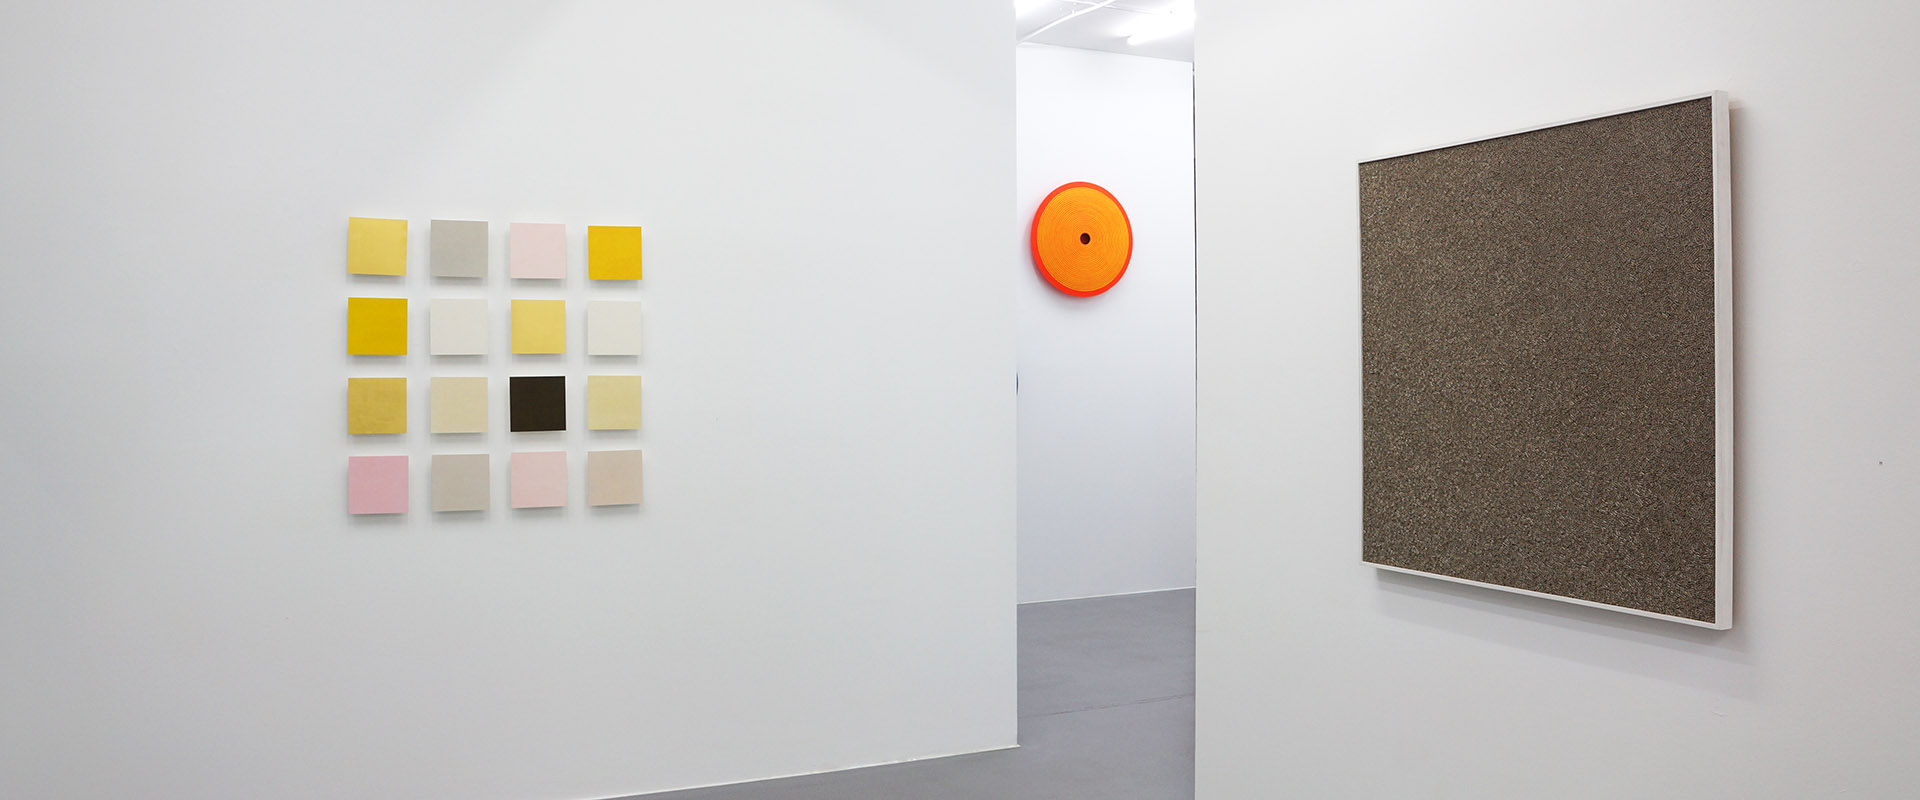 Ausstellungsansicht "Papierwelten 3.0", Galerie Renate Bender 2019